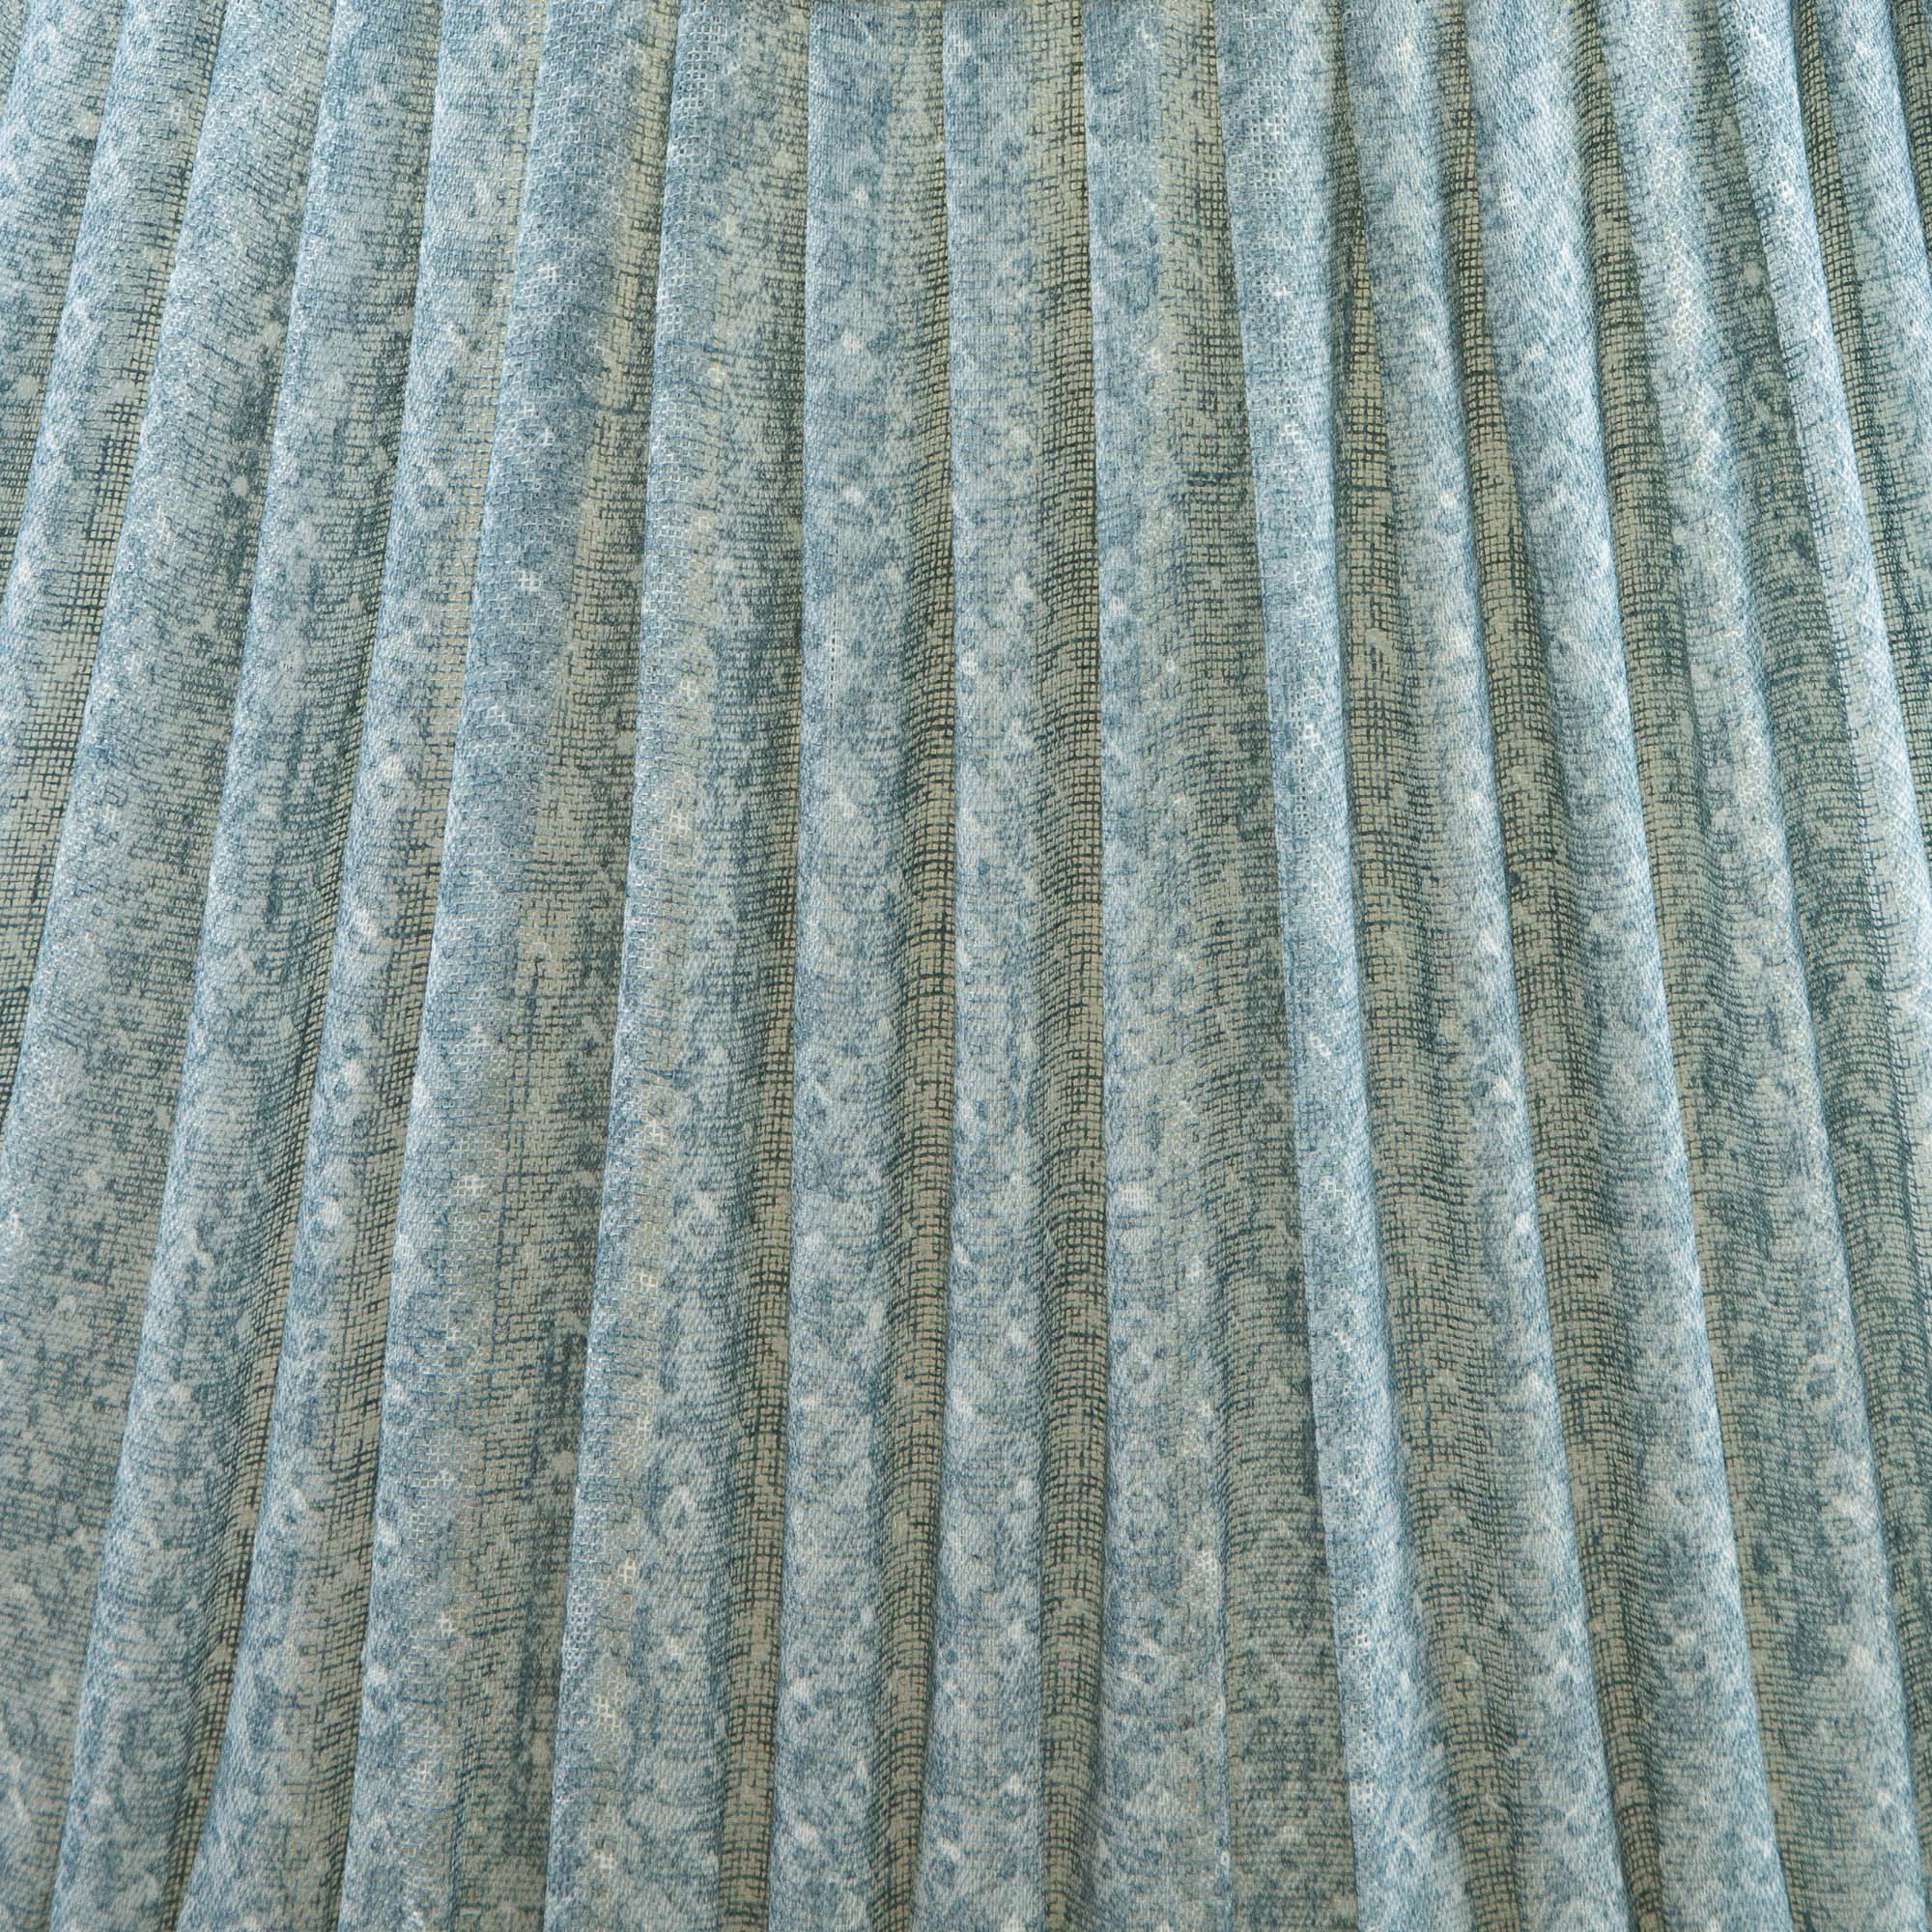 6" Fermoie Lampdshade - Figured Linen in Blue